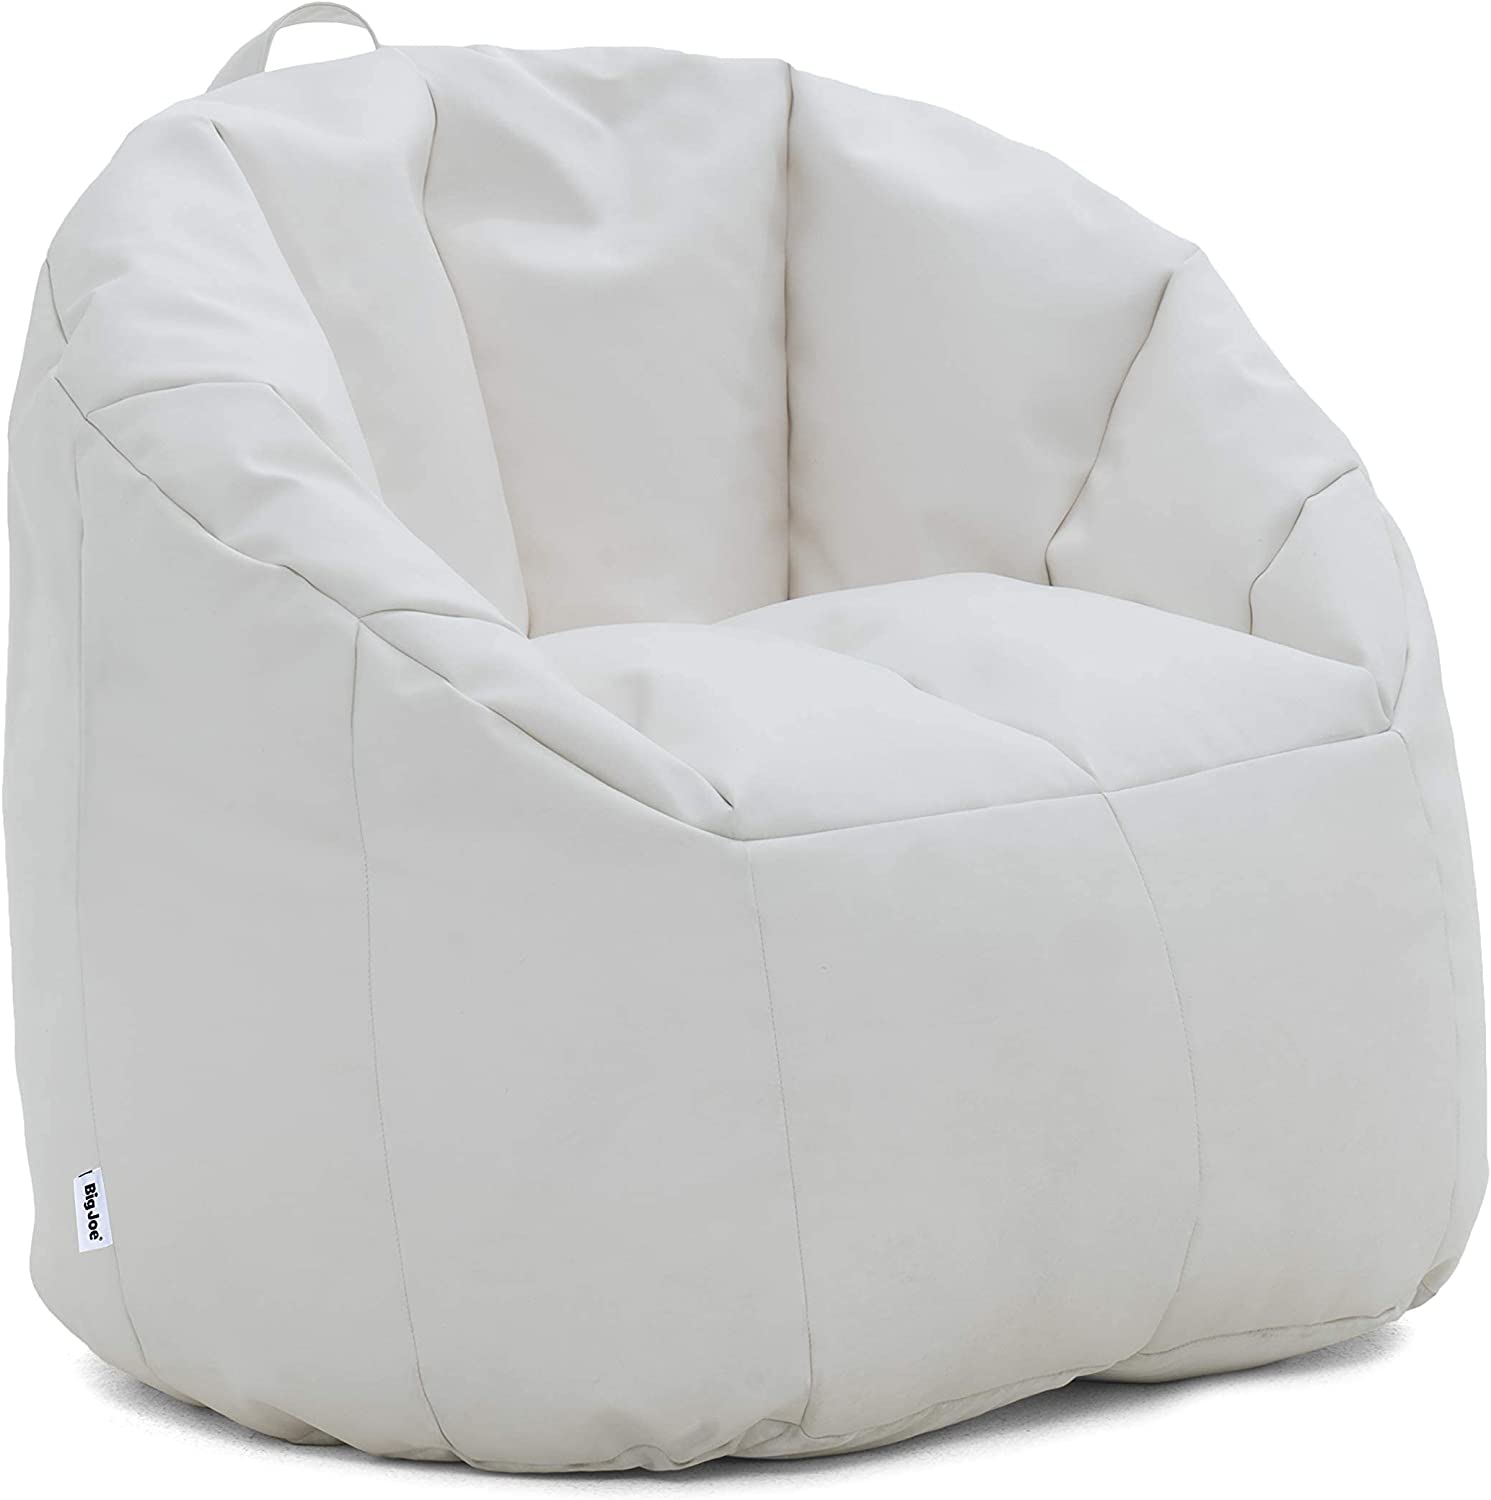 White Bean Bag / Chair